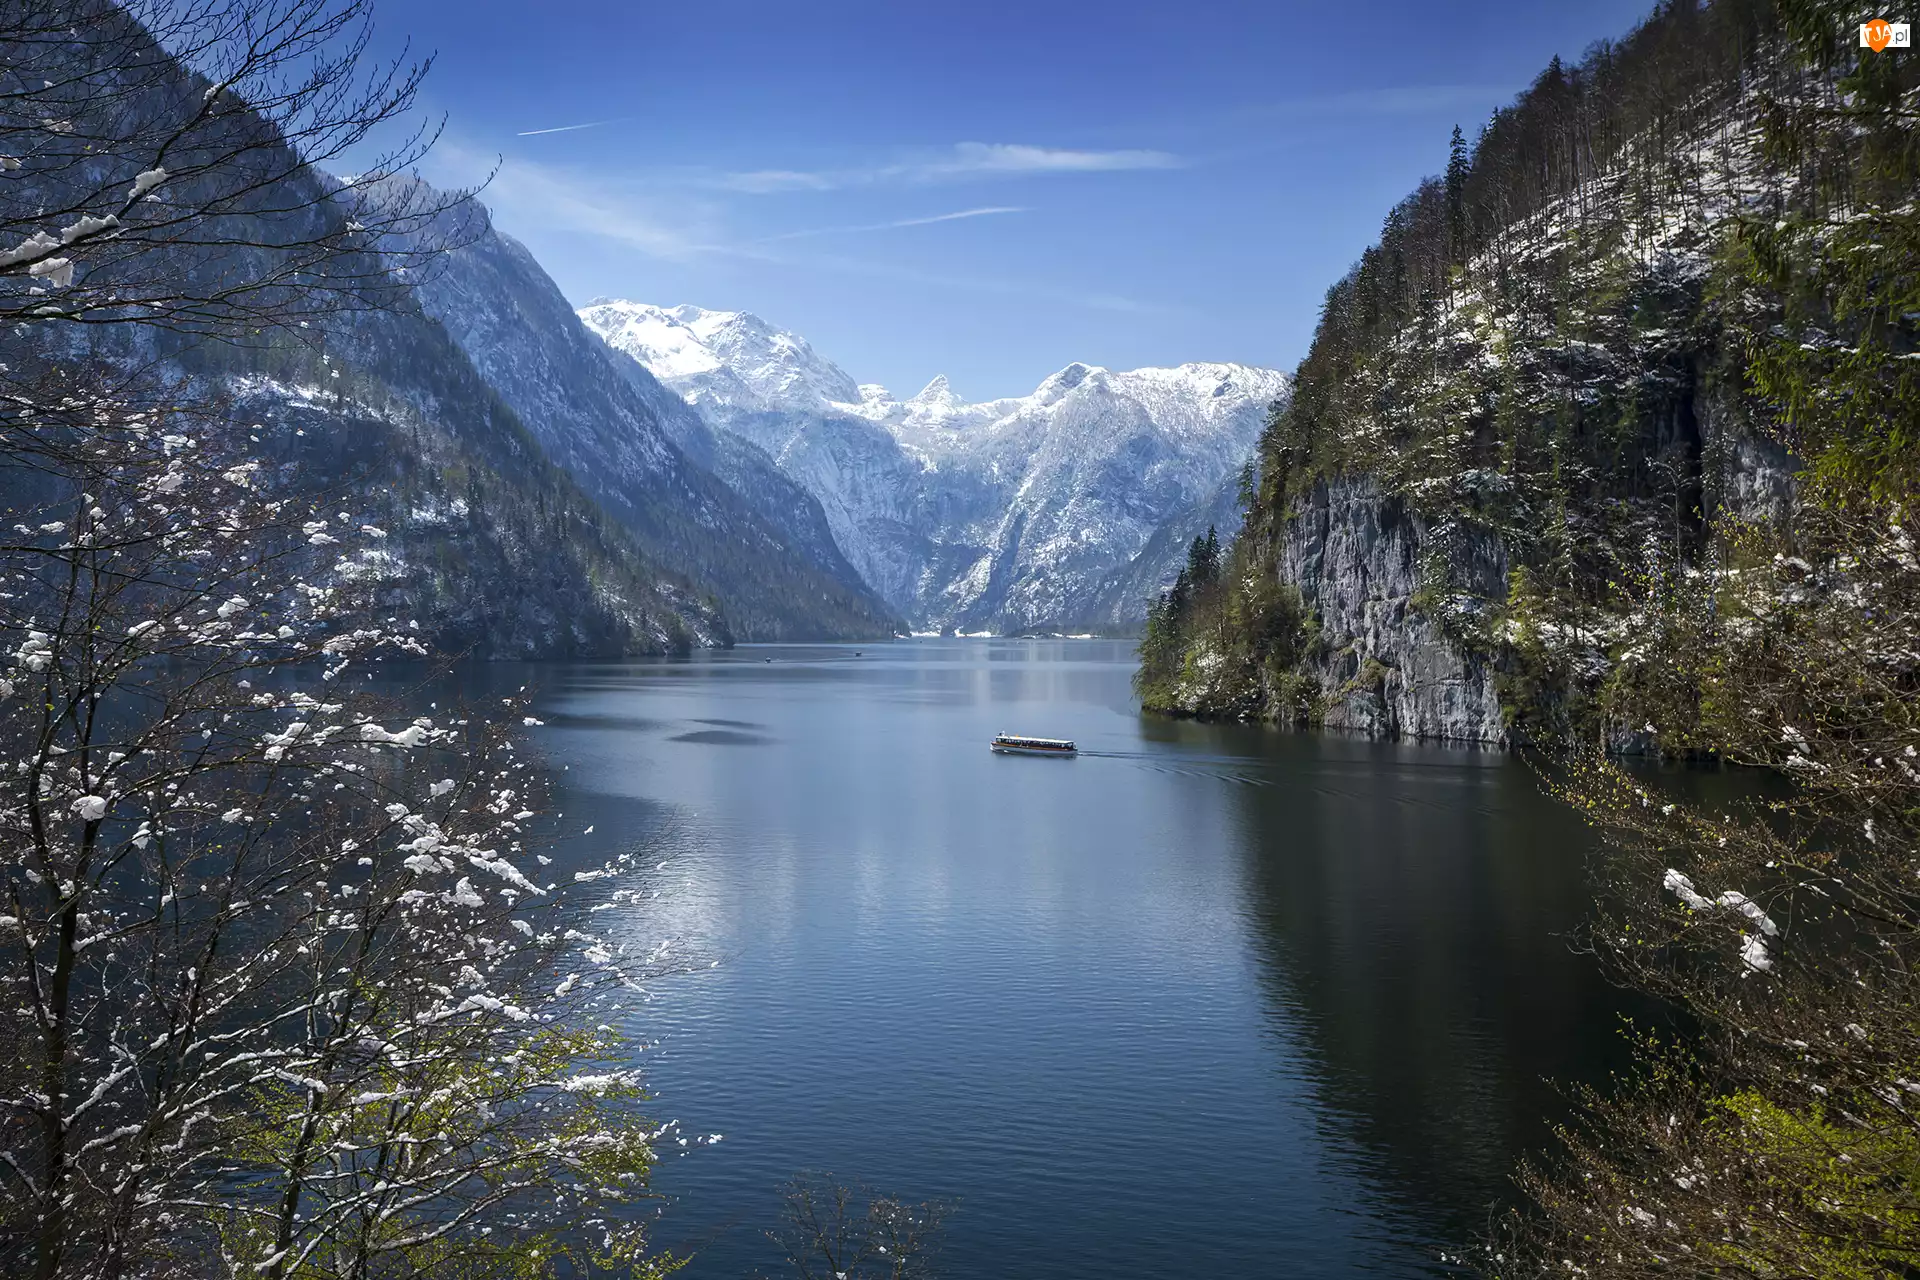 Park Narodowy Berchtesgaden, Jezioro Konigssee, Alpy, Bawaria, Statek, Drzewa, Niemcy, Góry